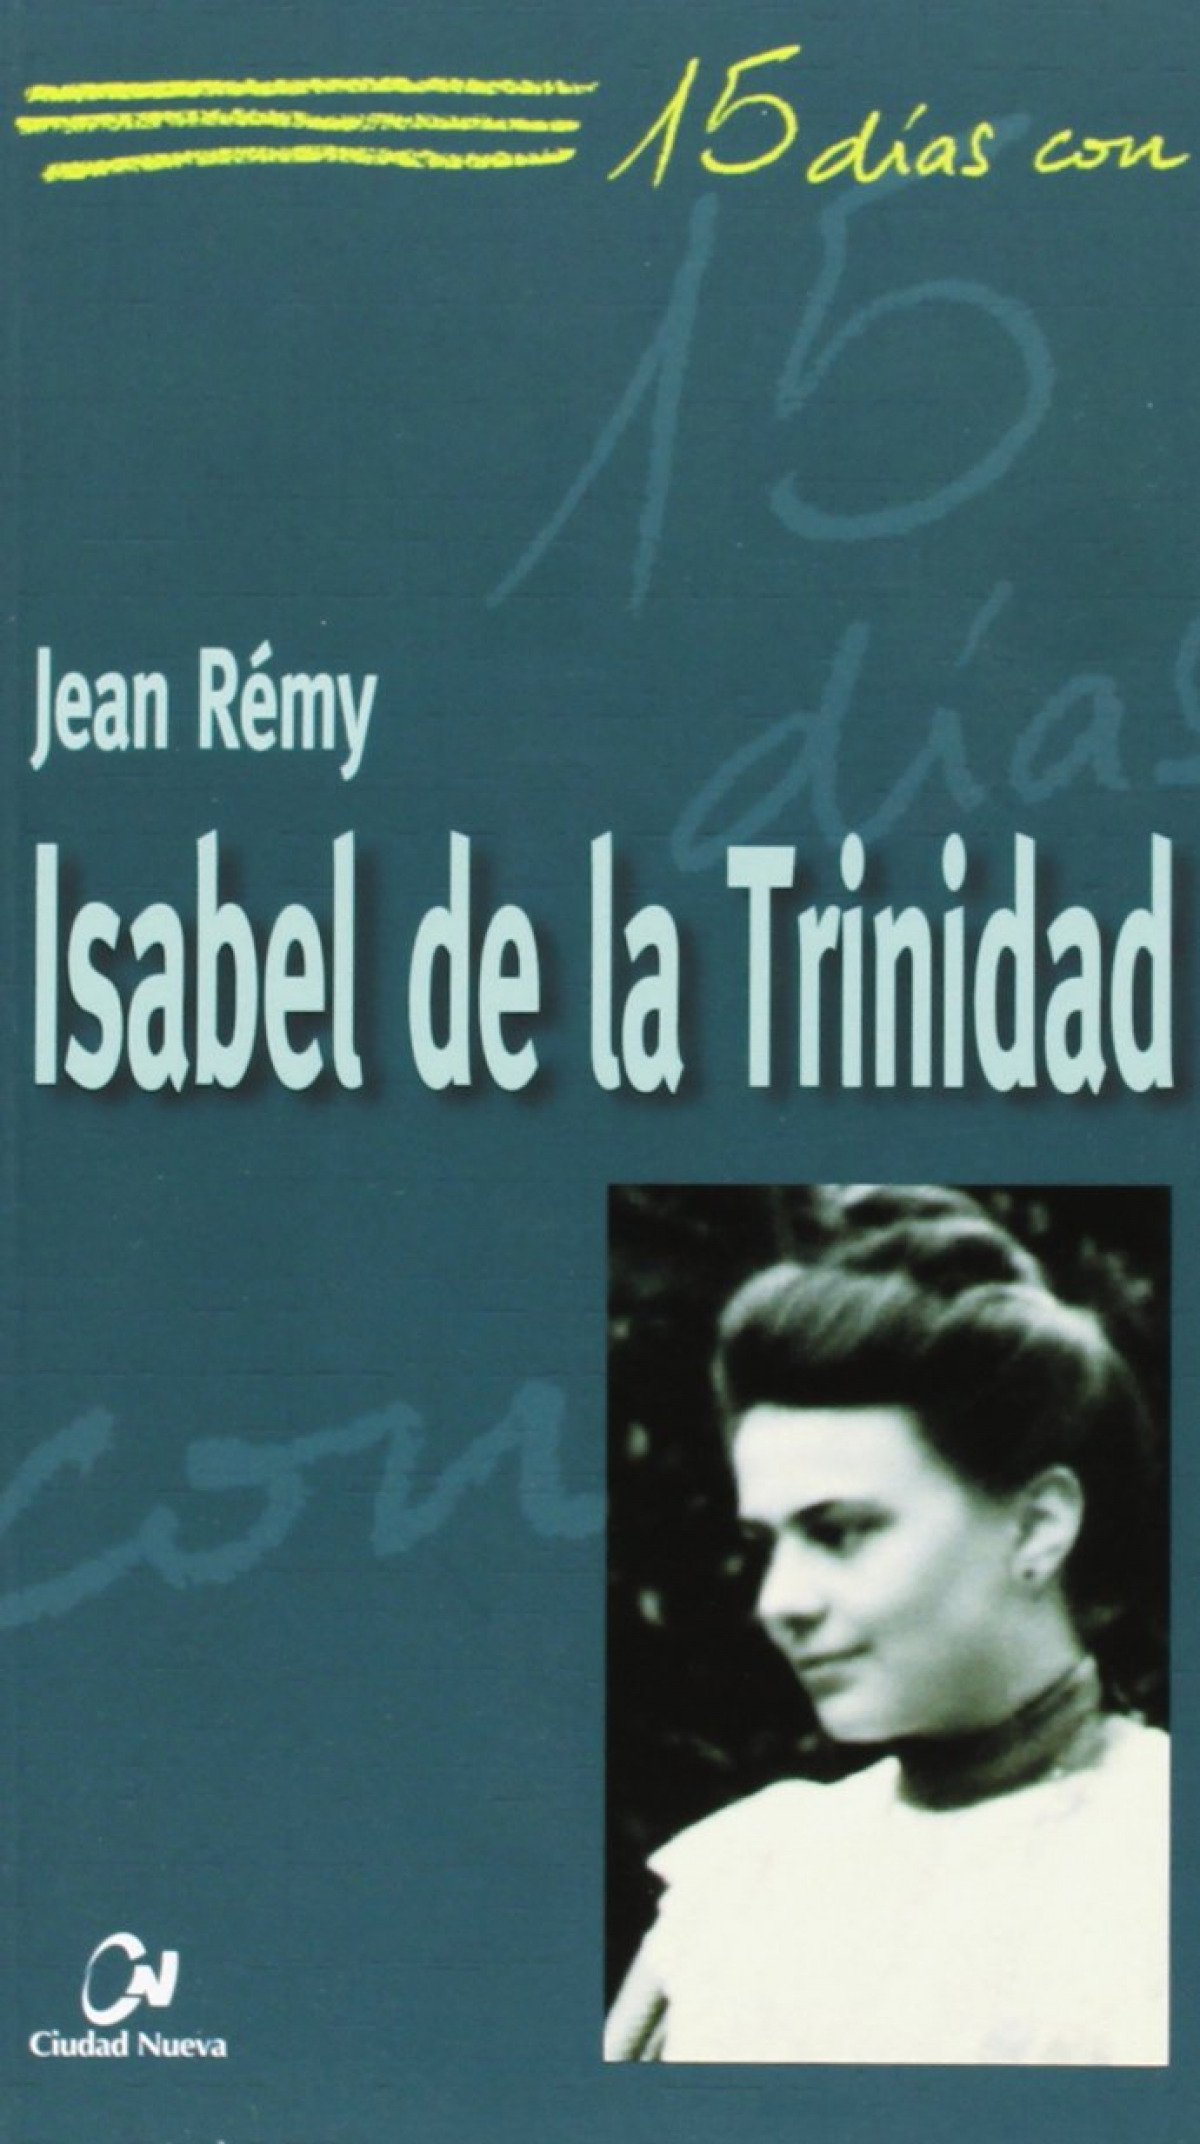 Isabel de la trinidad. 15 dias con... - Remy, Jean